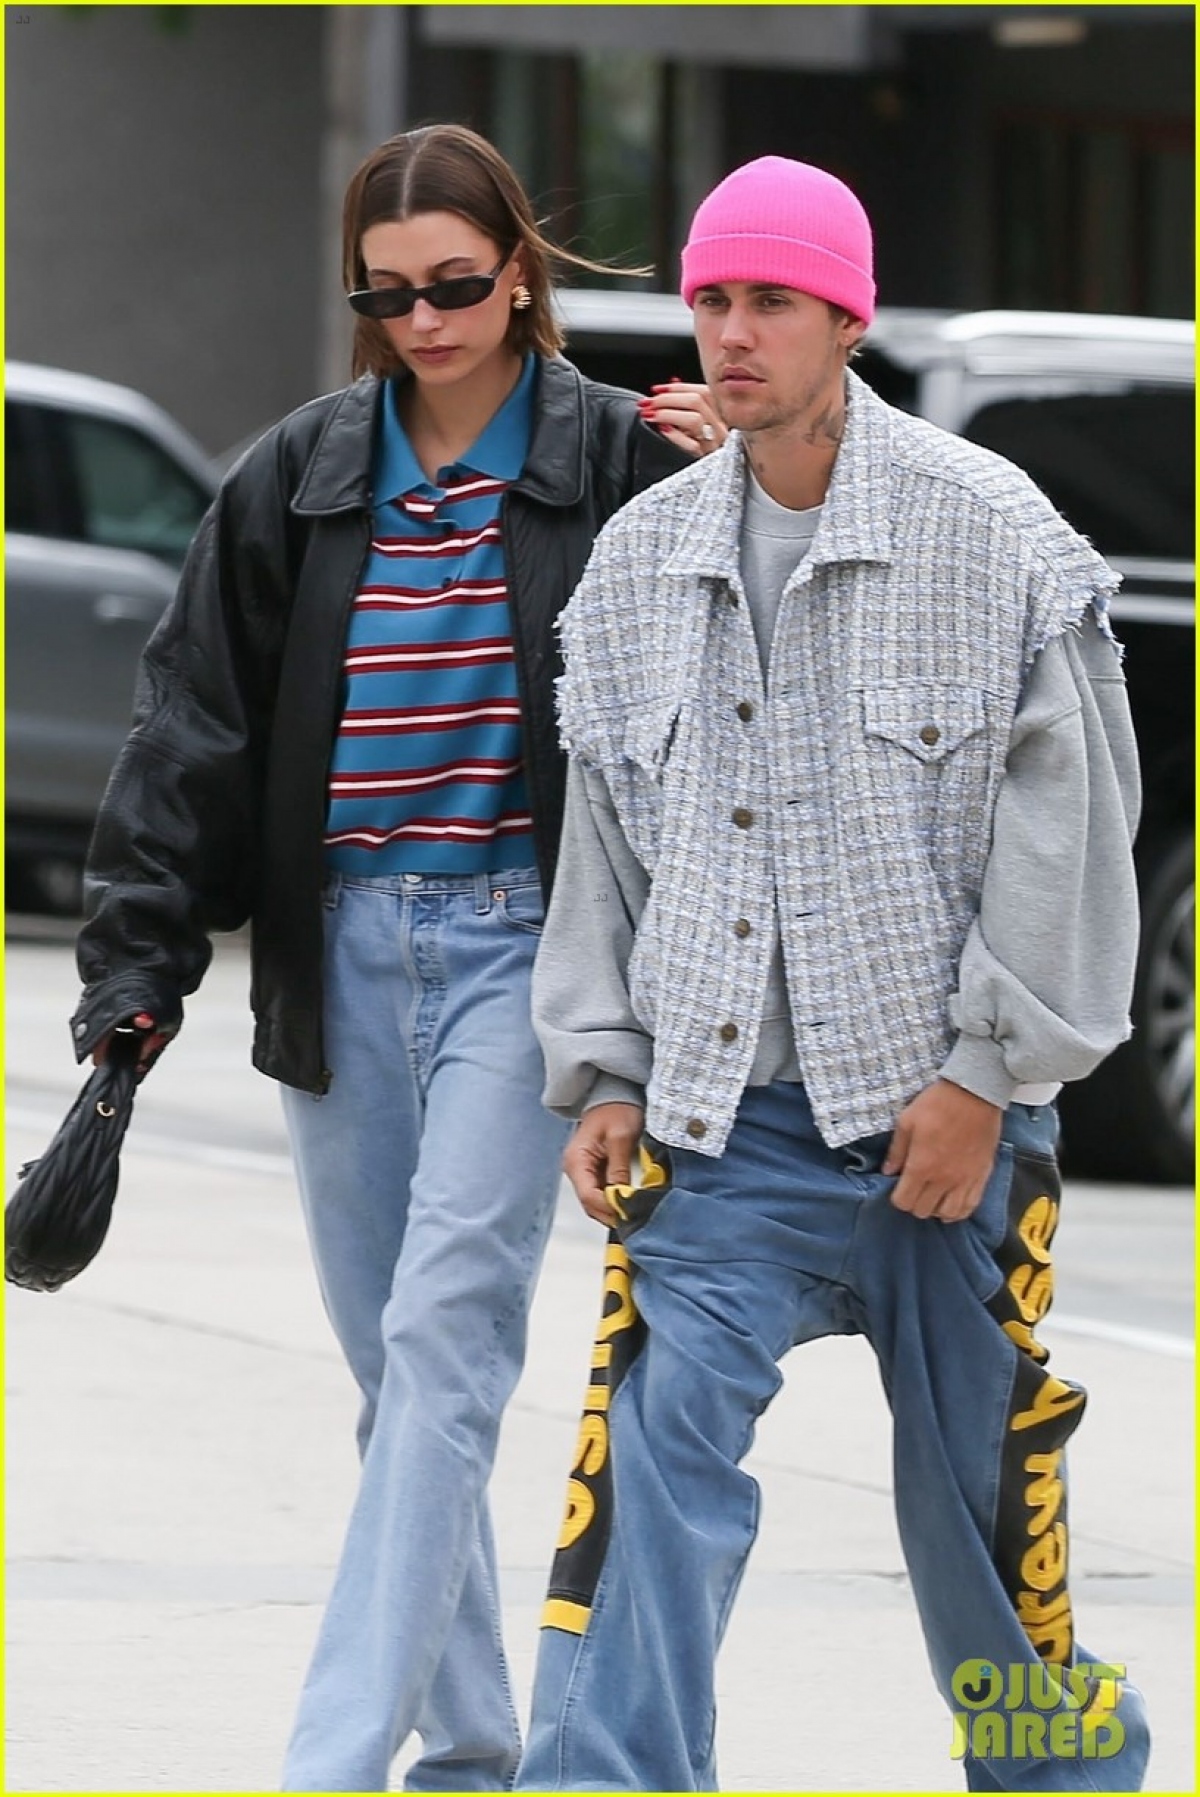 Vợ Justin Bieber sành điệu đi dạo phố cùng chồng sau tin đồn bắt nạt Selena Gomez - Ảnh 3.